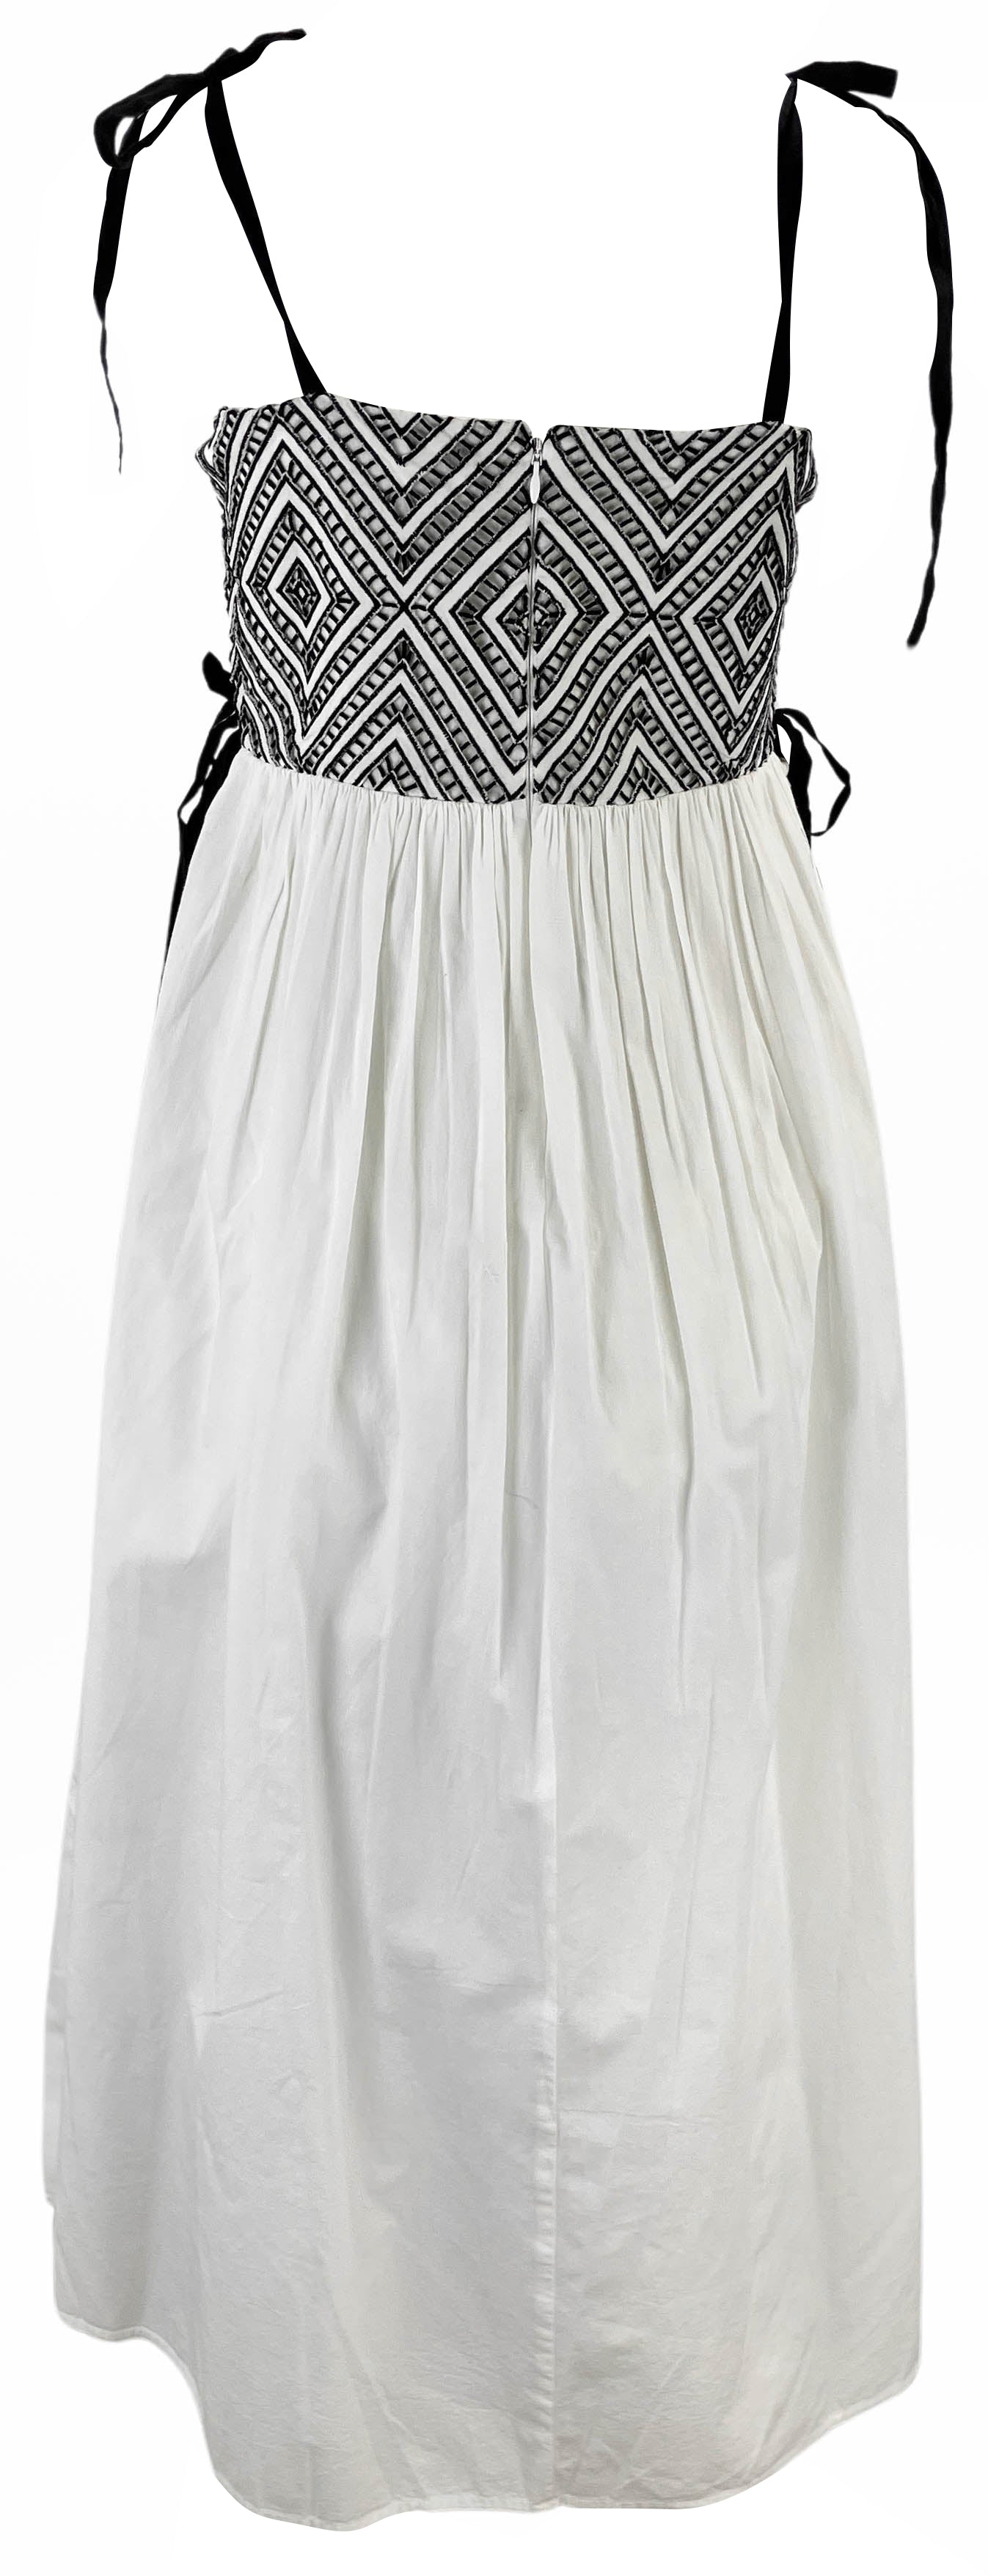 Tanya Taylor Yasmine Dress in Optic White/Black - Discounts on Tanya Taylor at UAL